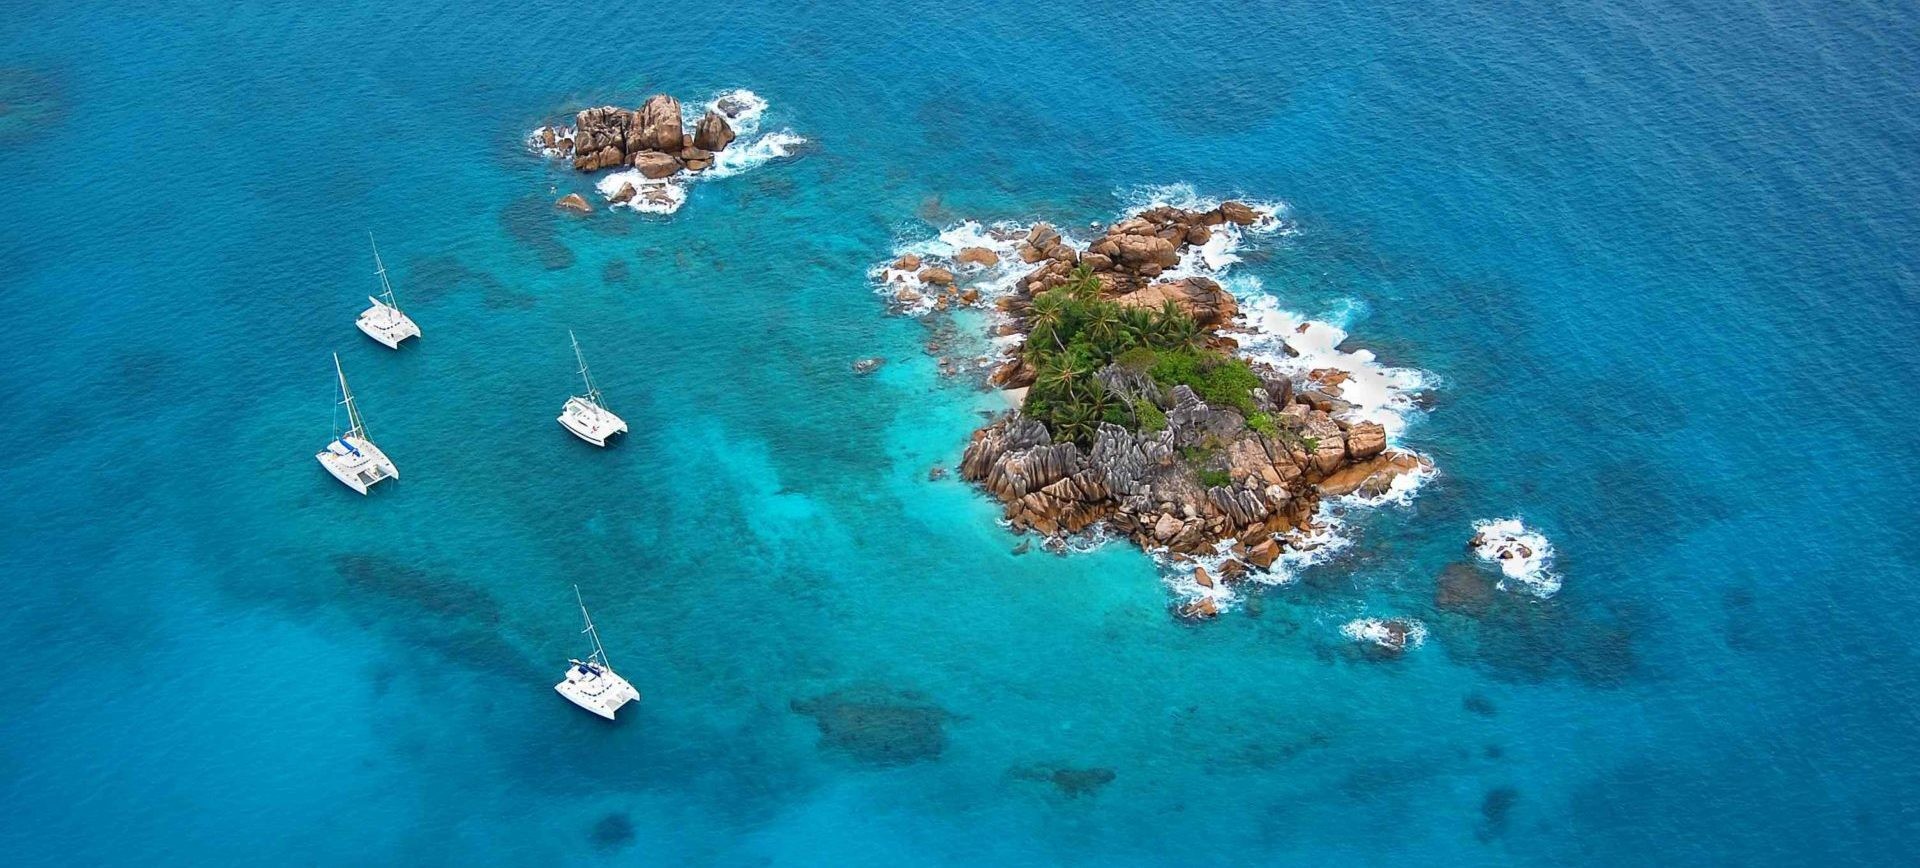 Seychelles, Oceano Indiano: Crociera in catamarano